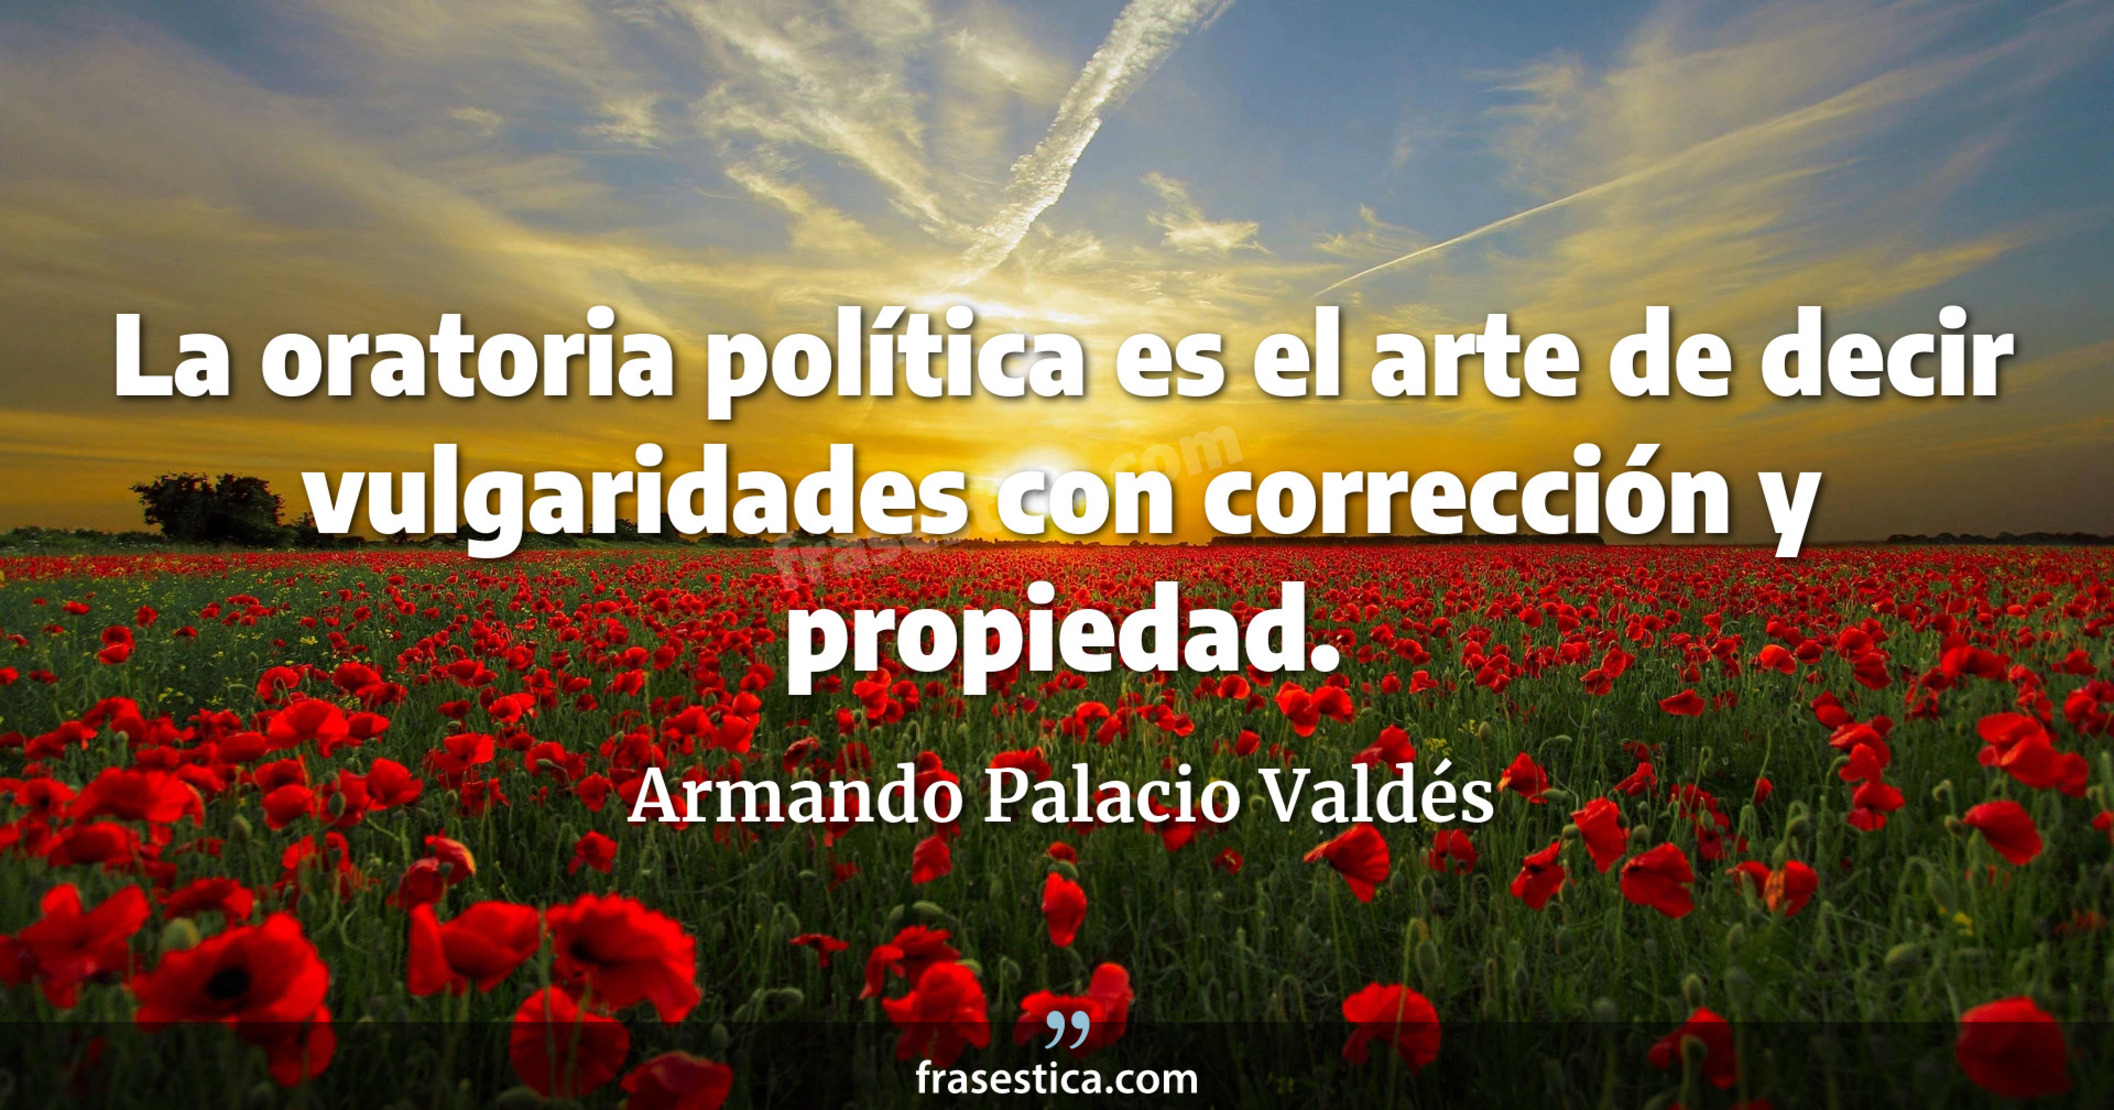 La oratoria política es el arte de decir vulgaridades con corrección y propiedad. - Armando Palacio Valdés